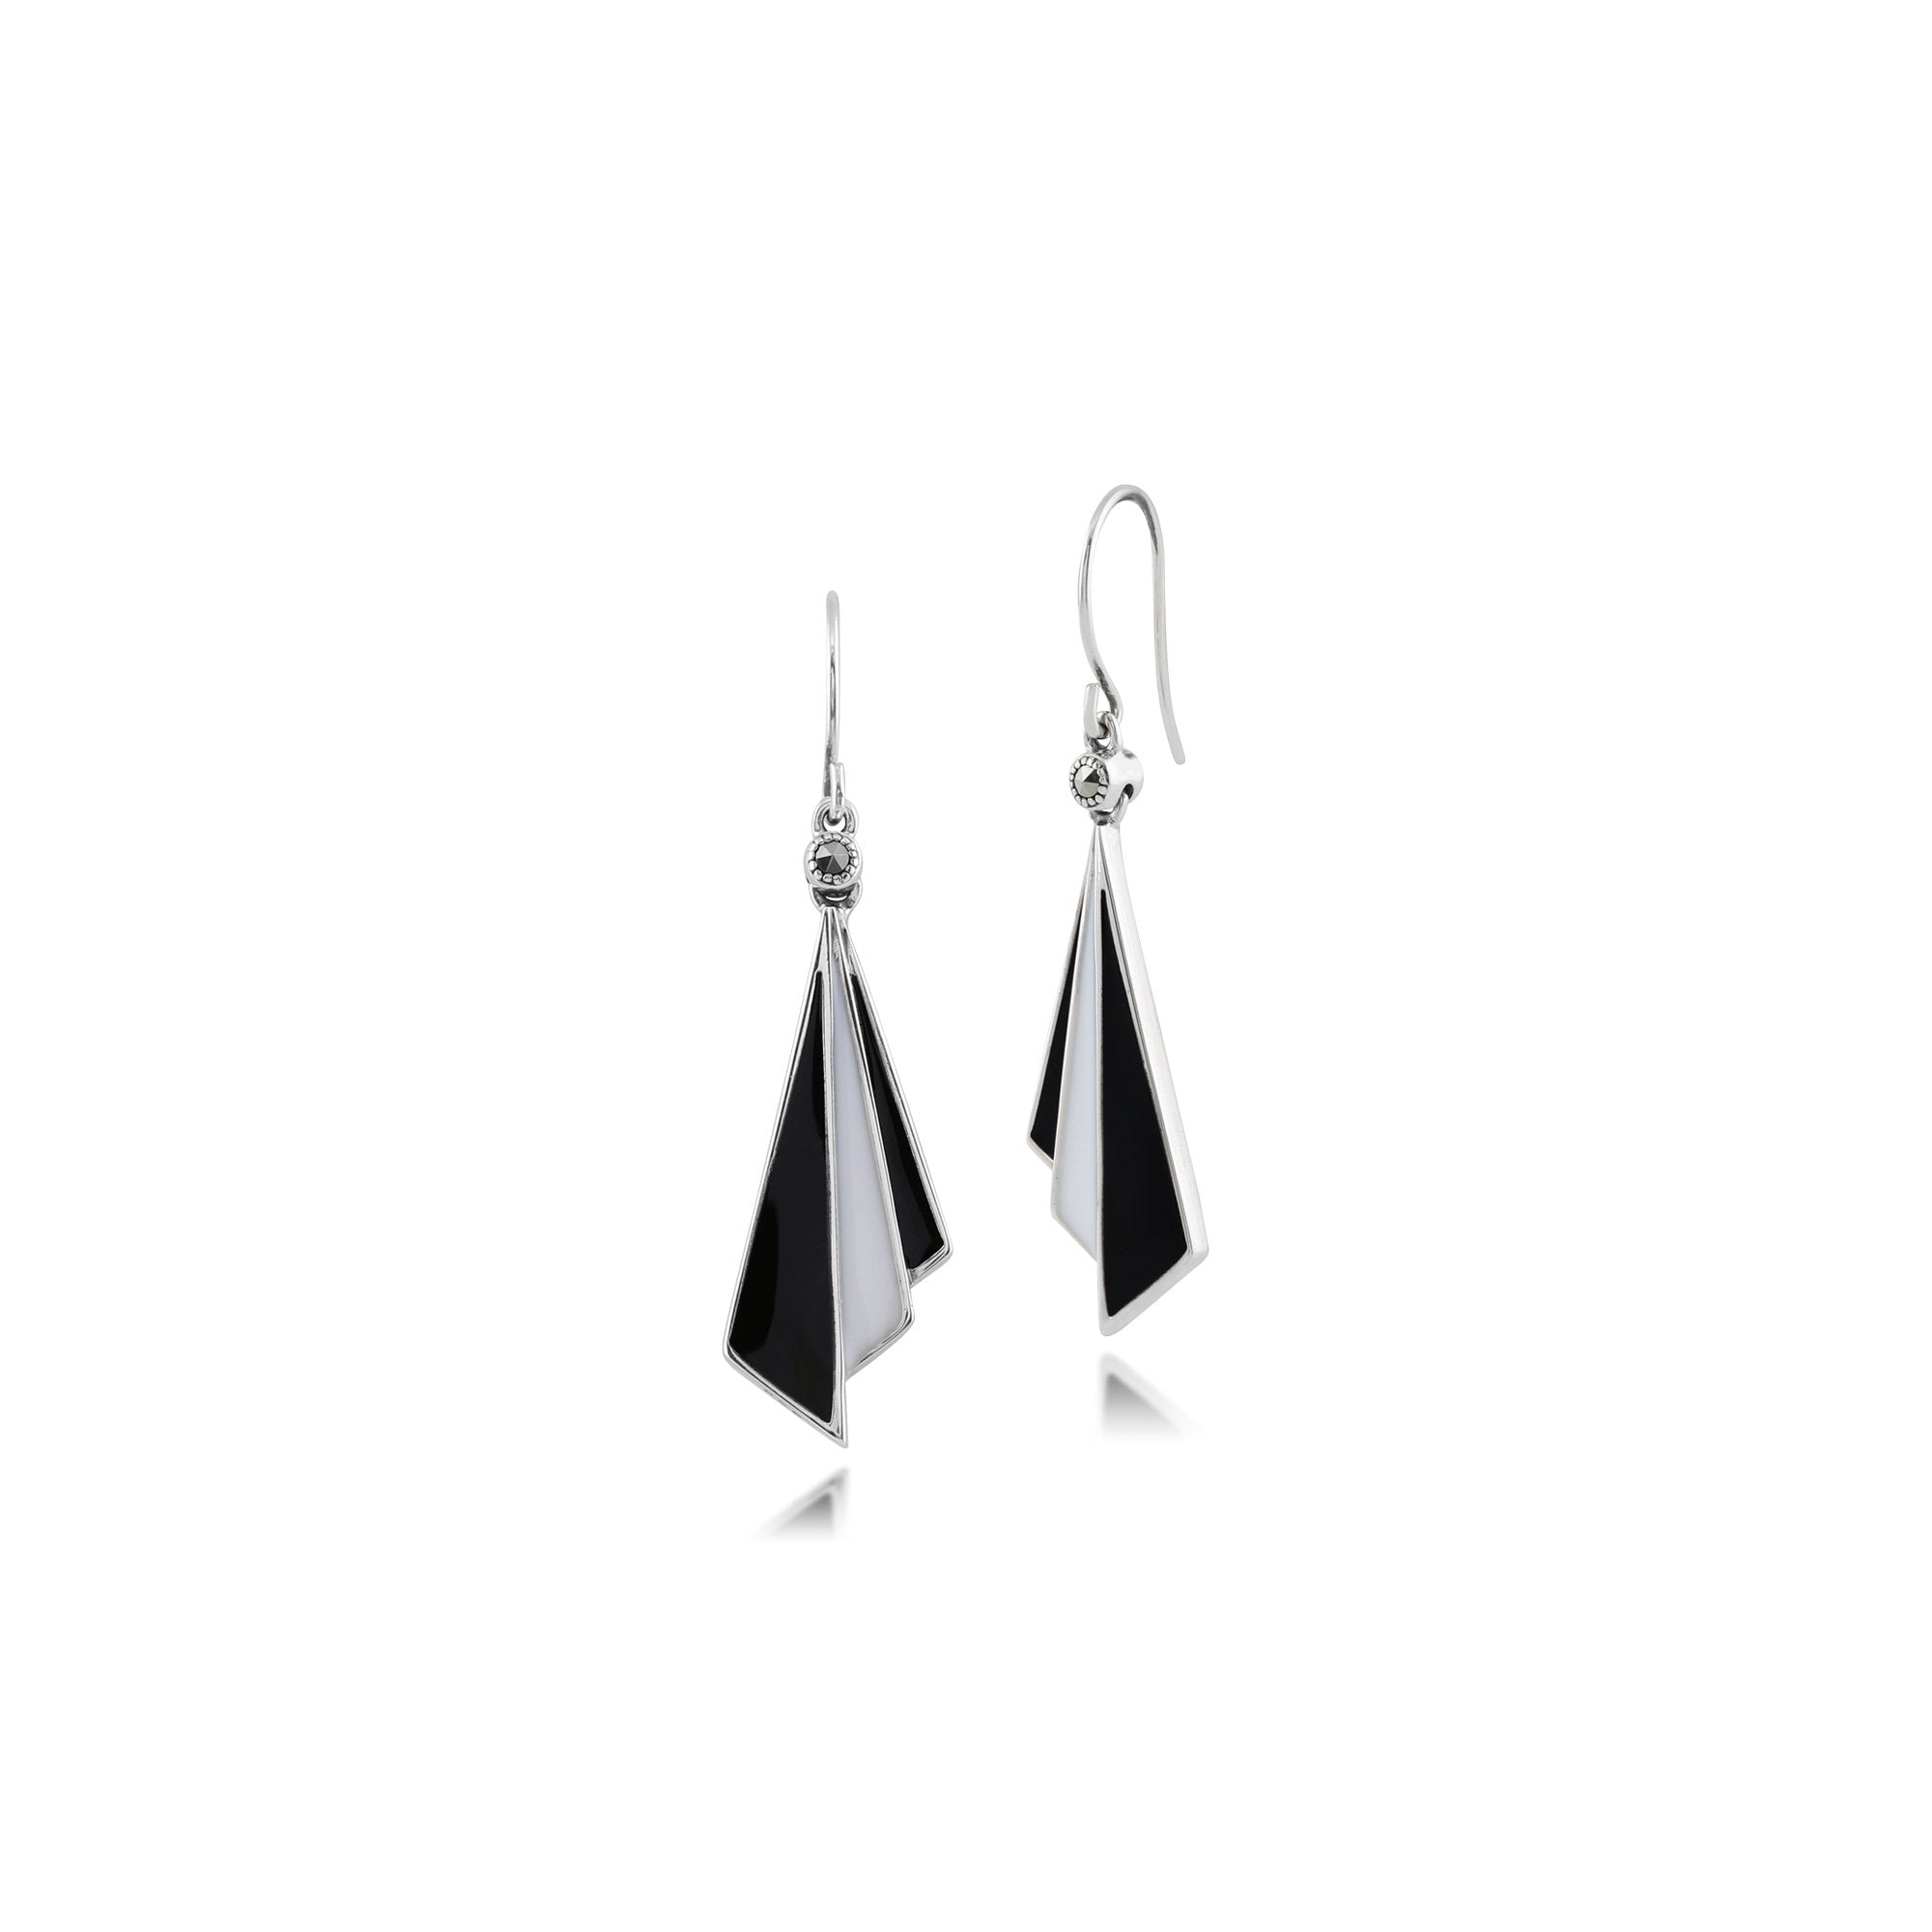 Art Deco Style Triangle Black & White Enamel Folded Fan Drop Earrings in 925 Sterling Silver